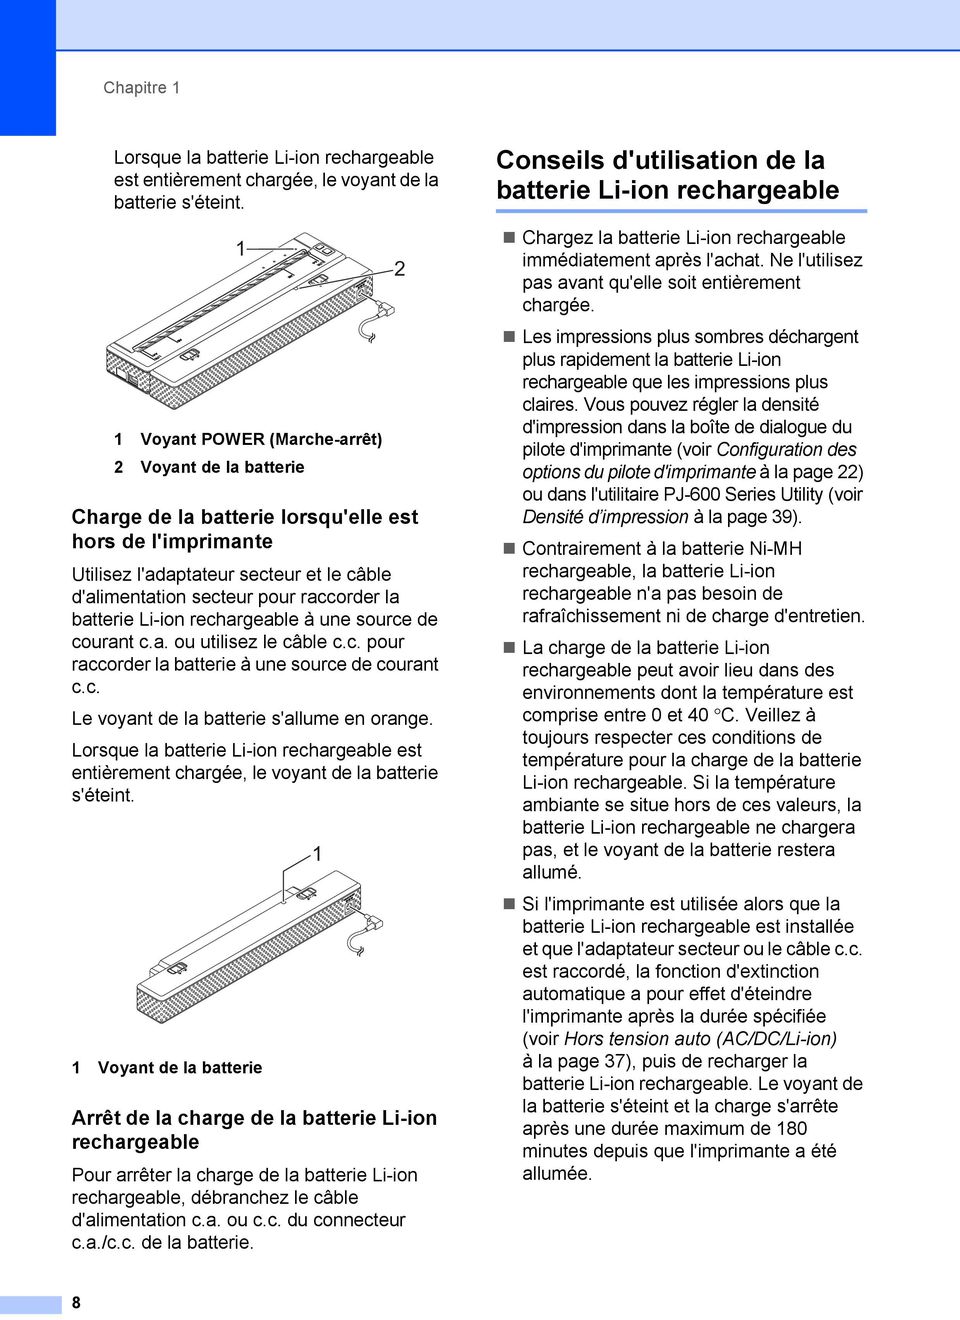 batterie Li-ion rechargeable à une source de courant c.a. ou utilisez le câble c.c. pour raccorder la batterie à une source de courant c.c. Le voyant de la batterie s'allume en orange.